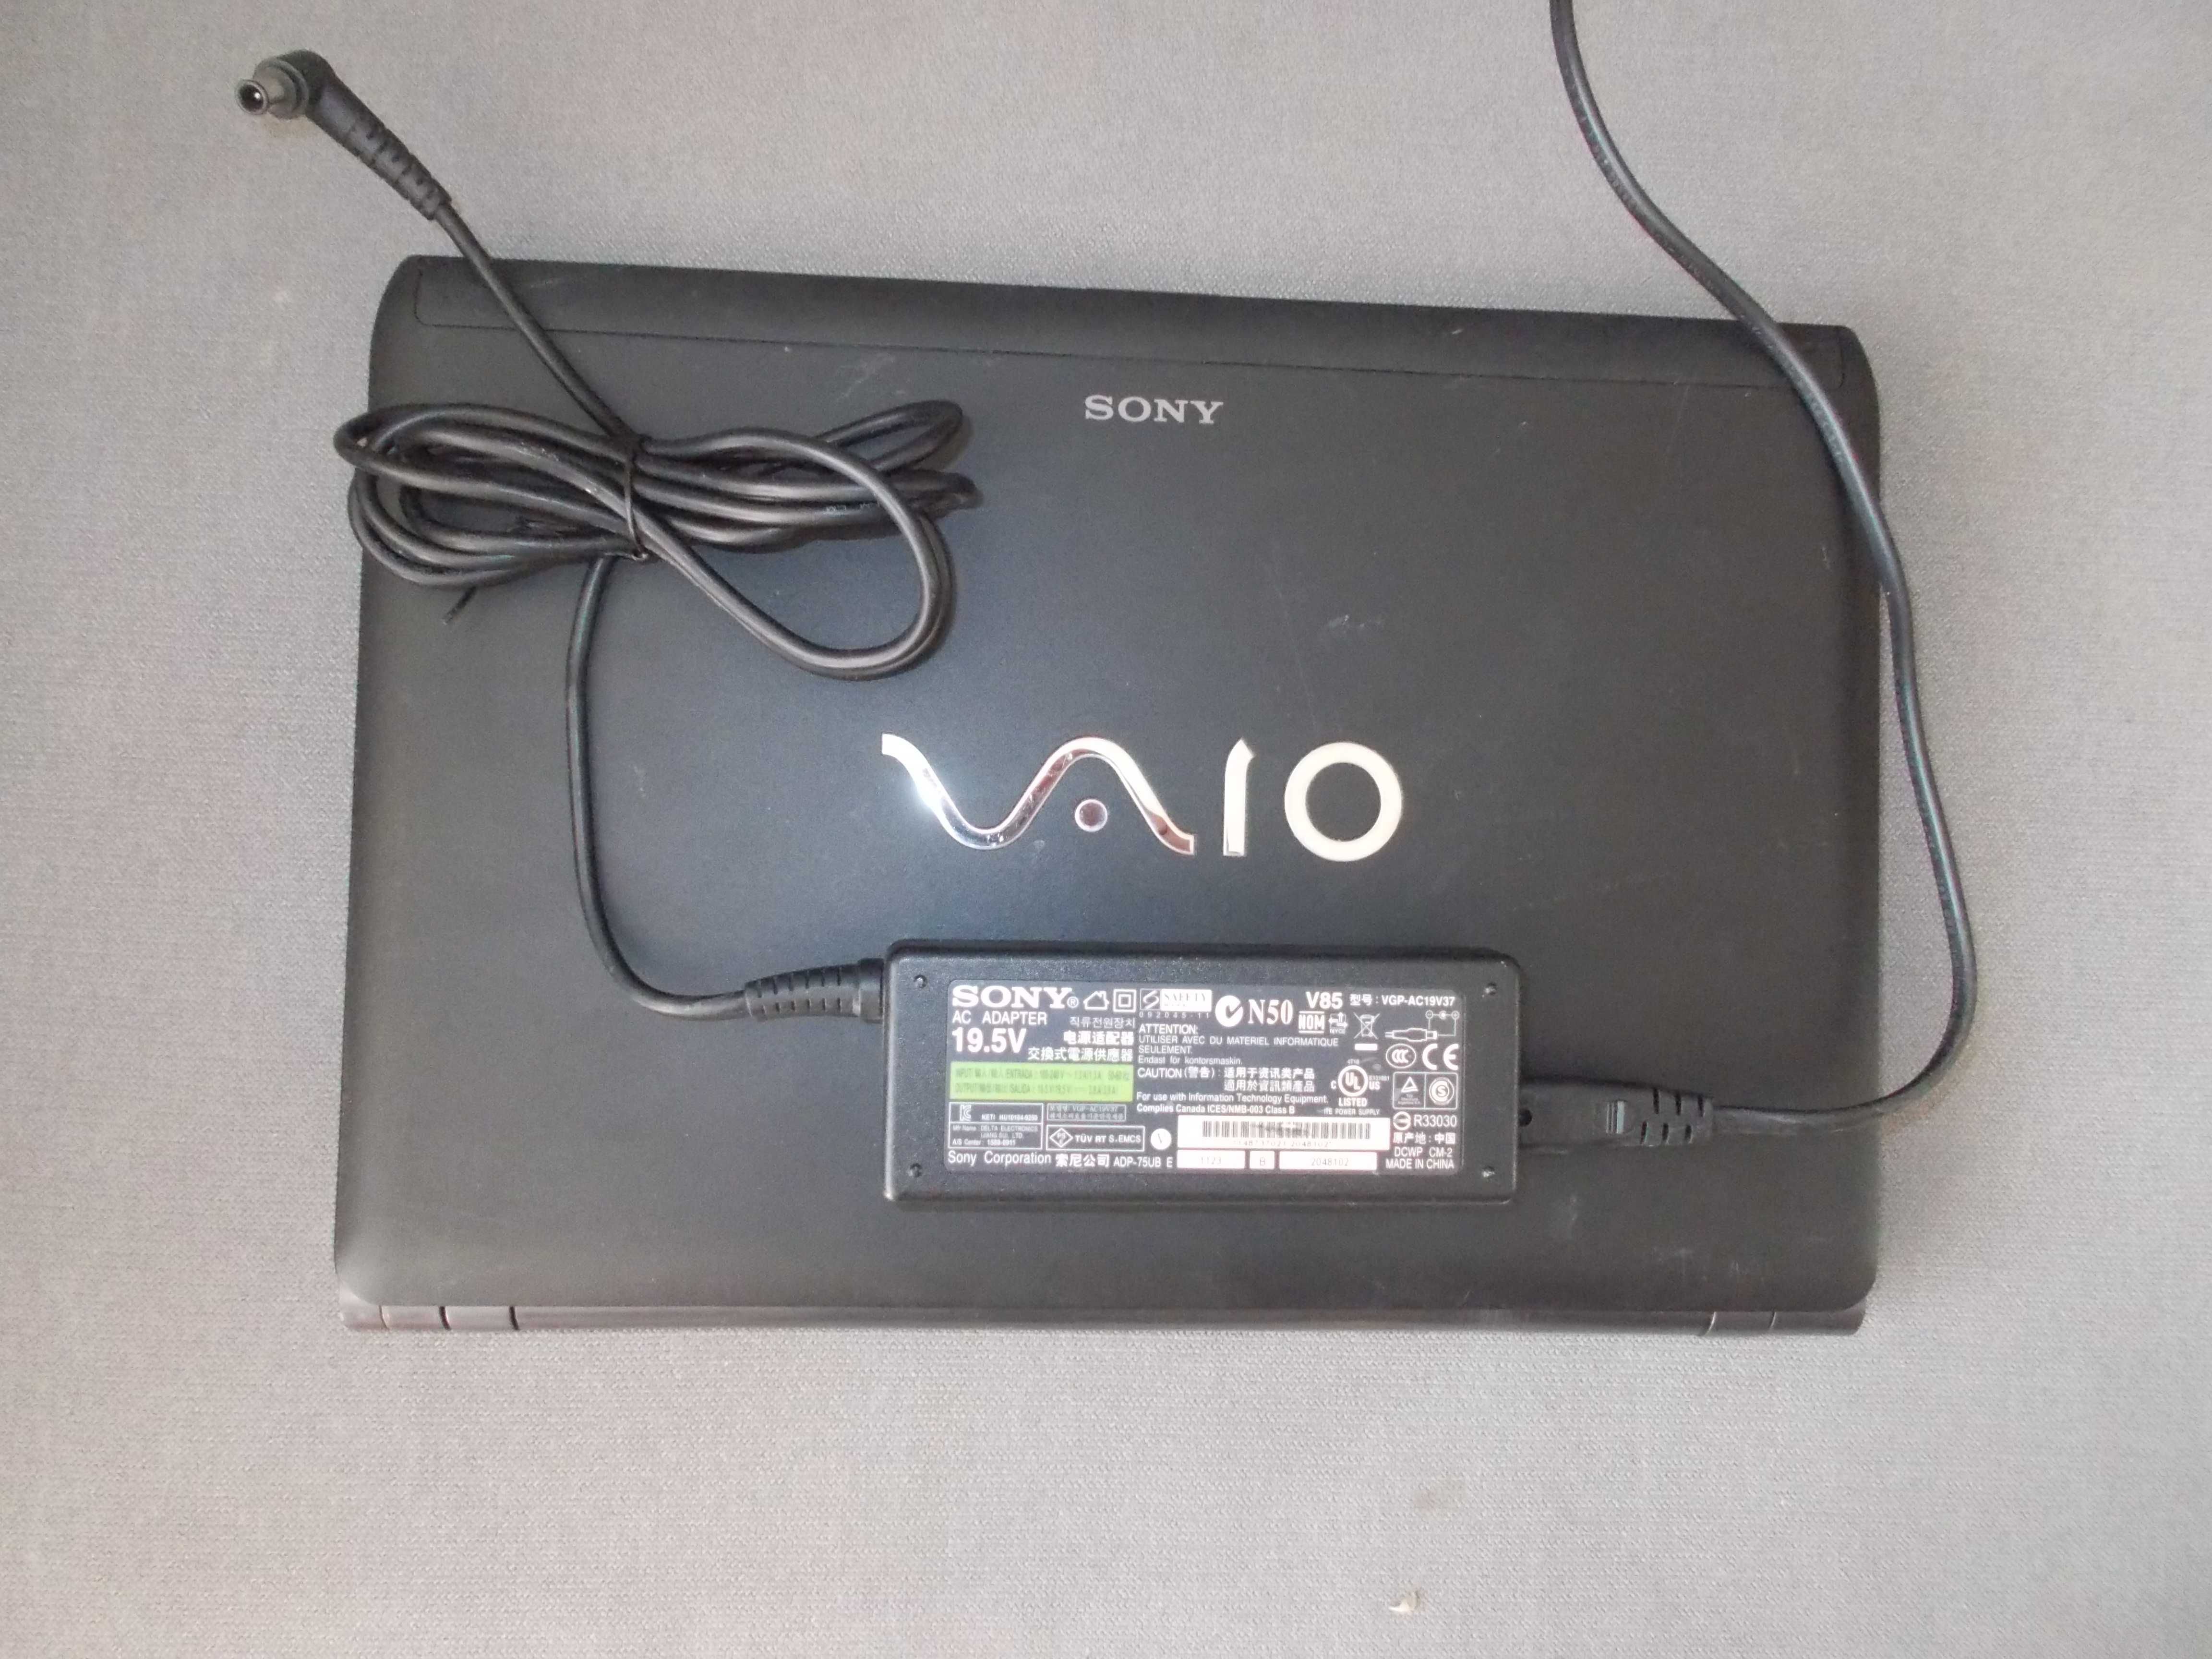 laptop Sony Vaio I3 zasilacz, bateria OK